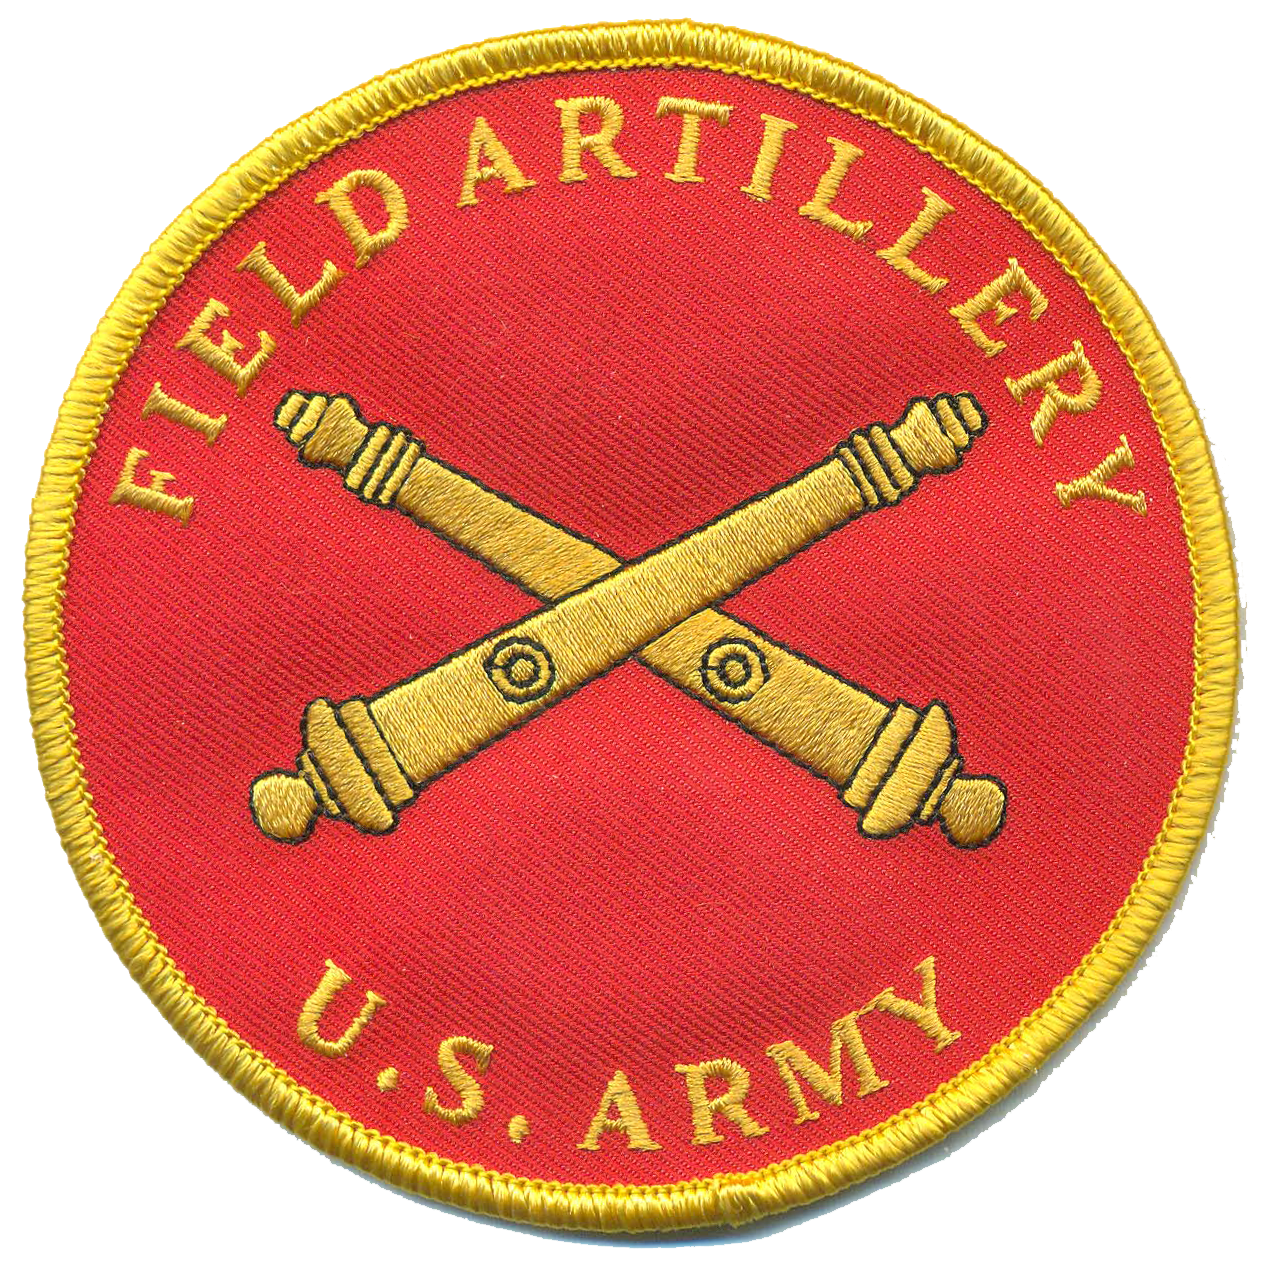 U.S. Army Field Artillery Novelty Patch